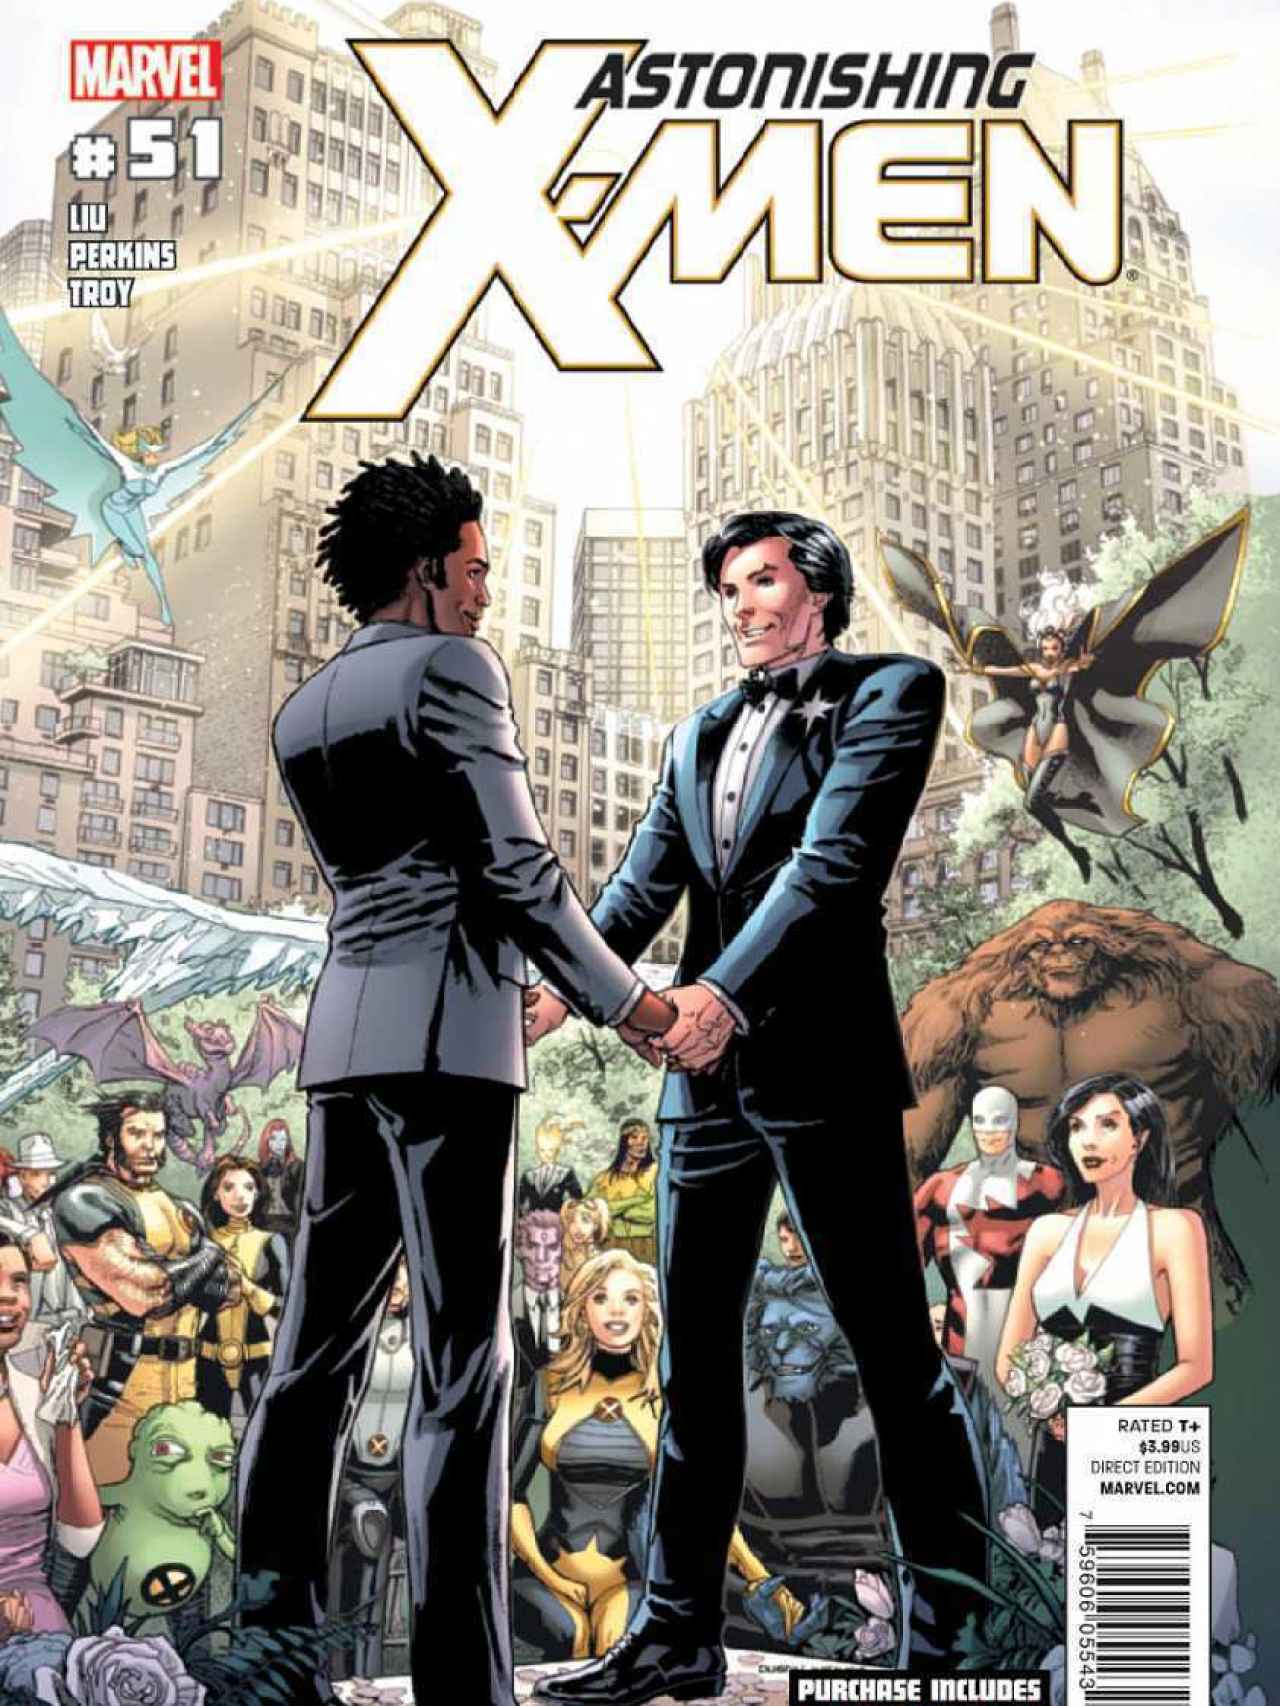 Portada de la revista Astonishing X-Men (número 51).